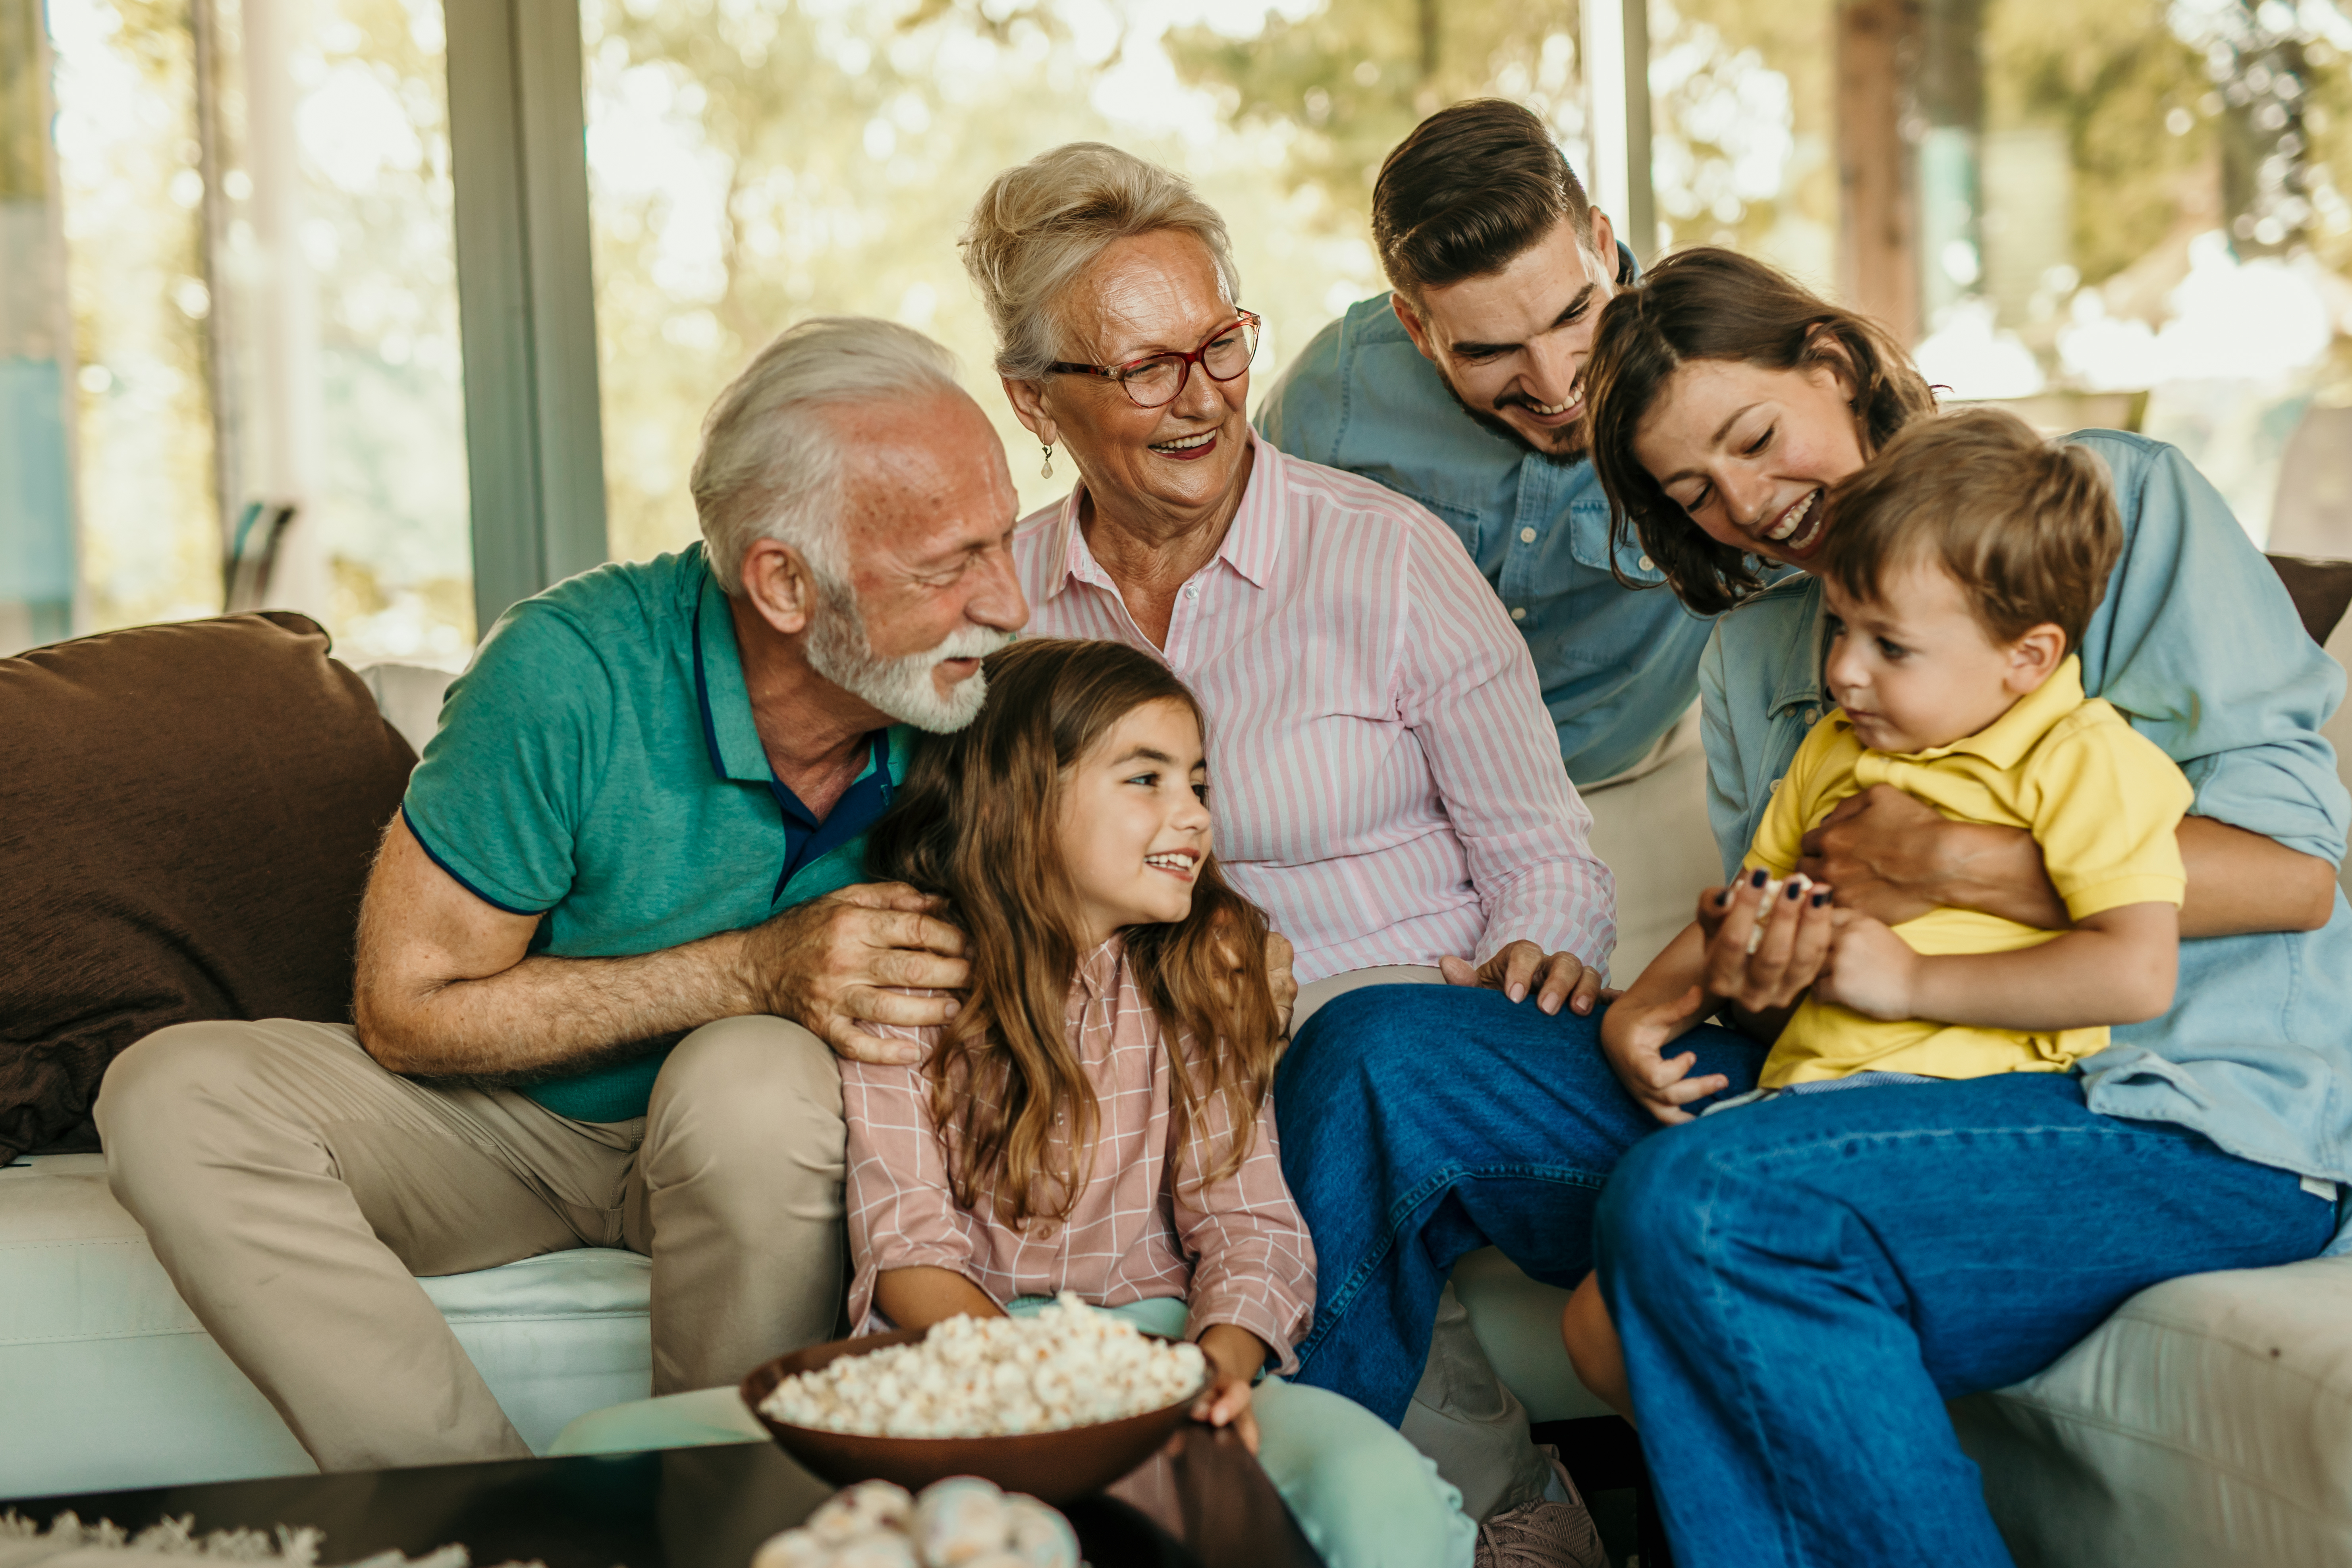 Familien-Popcorn und Sofa-Zeit | Quelle: Getty Images